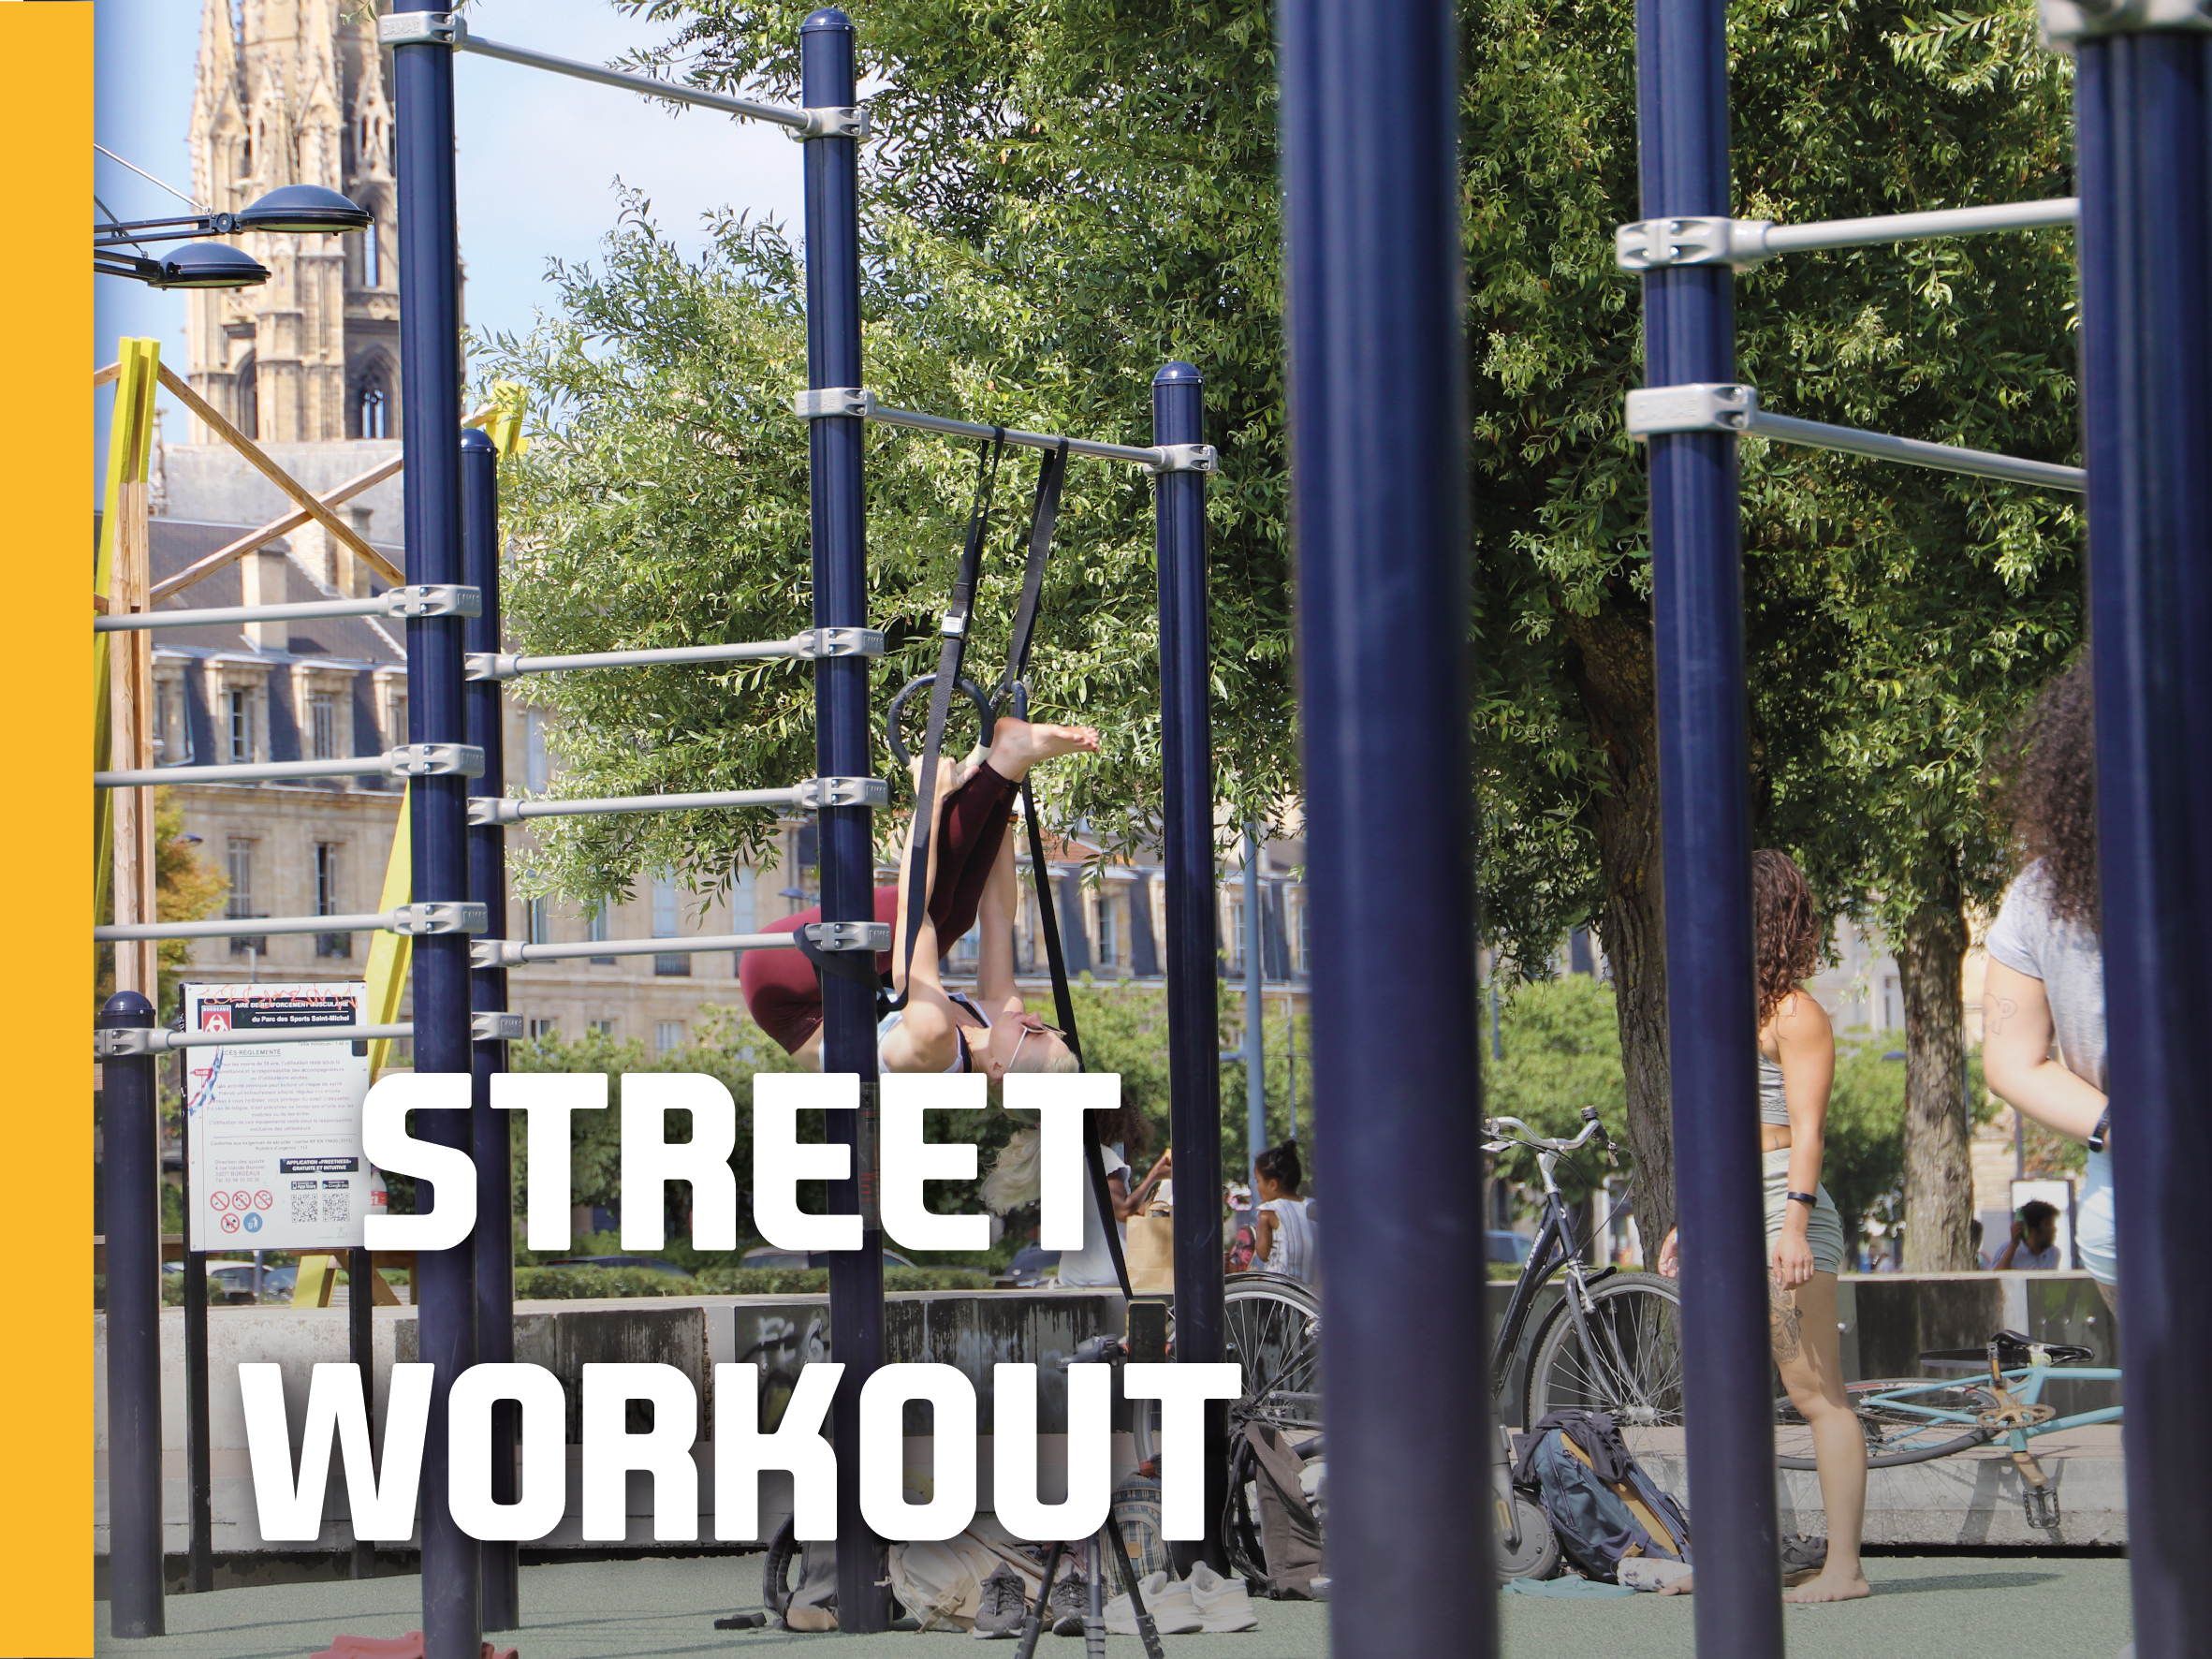 Créer une aire de Street workout